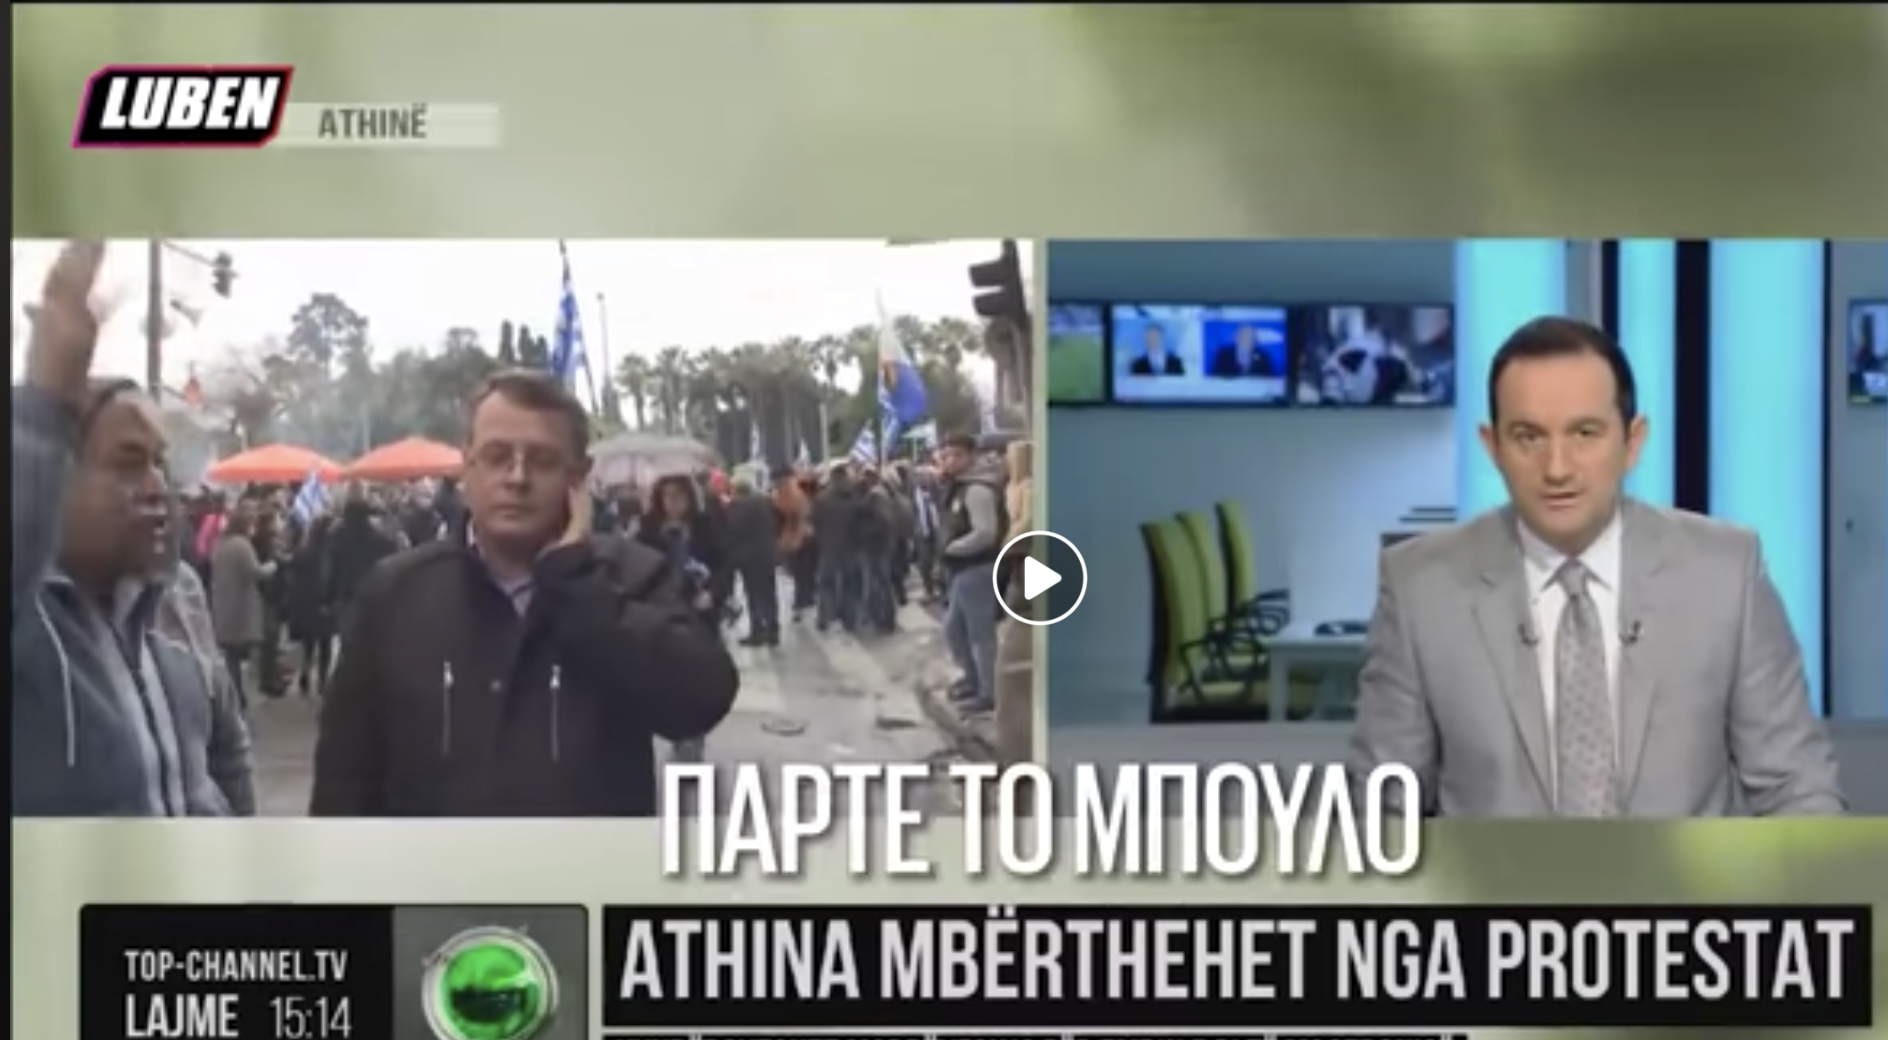 Έλληνας διαδηλωτής στο #Συλλαλητήριο προς αλβανικό κανάλι: “ΠΑΡΤΕ ΤΟ ΜΠ**ΛΟ & ΔΡΟΜΟ!”